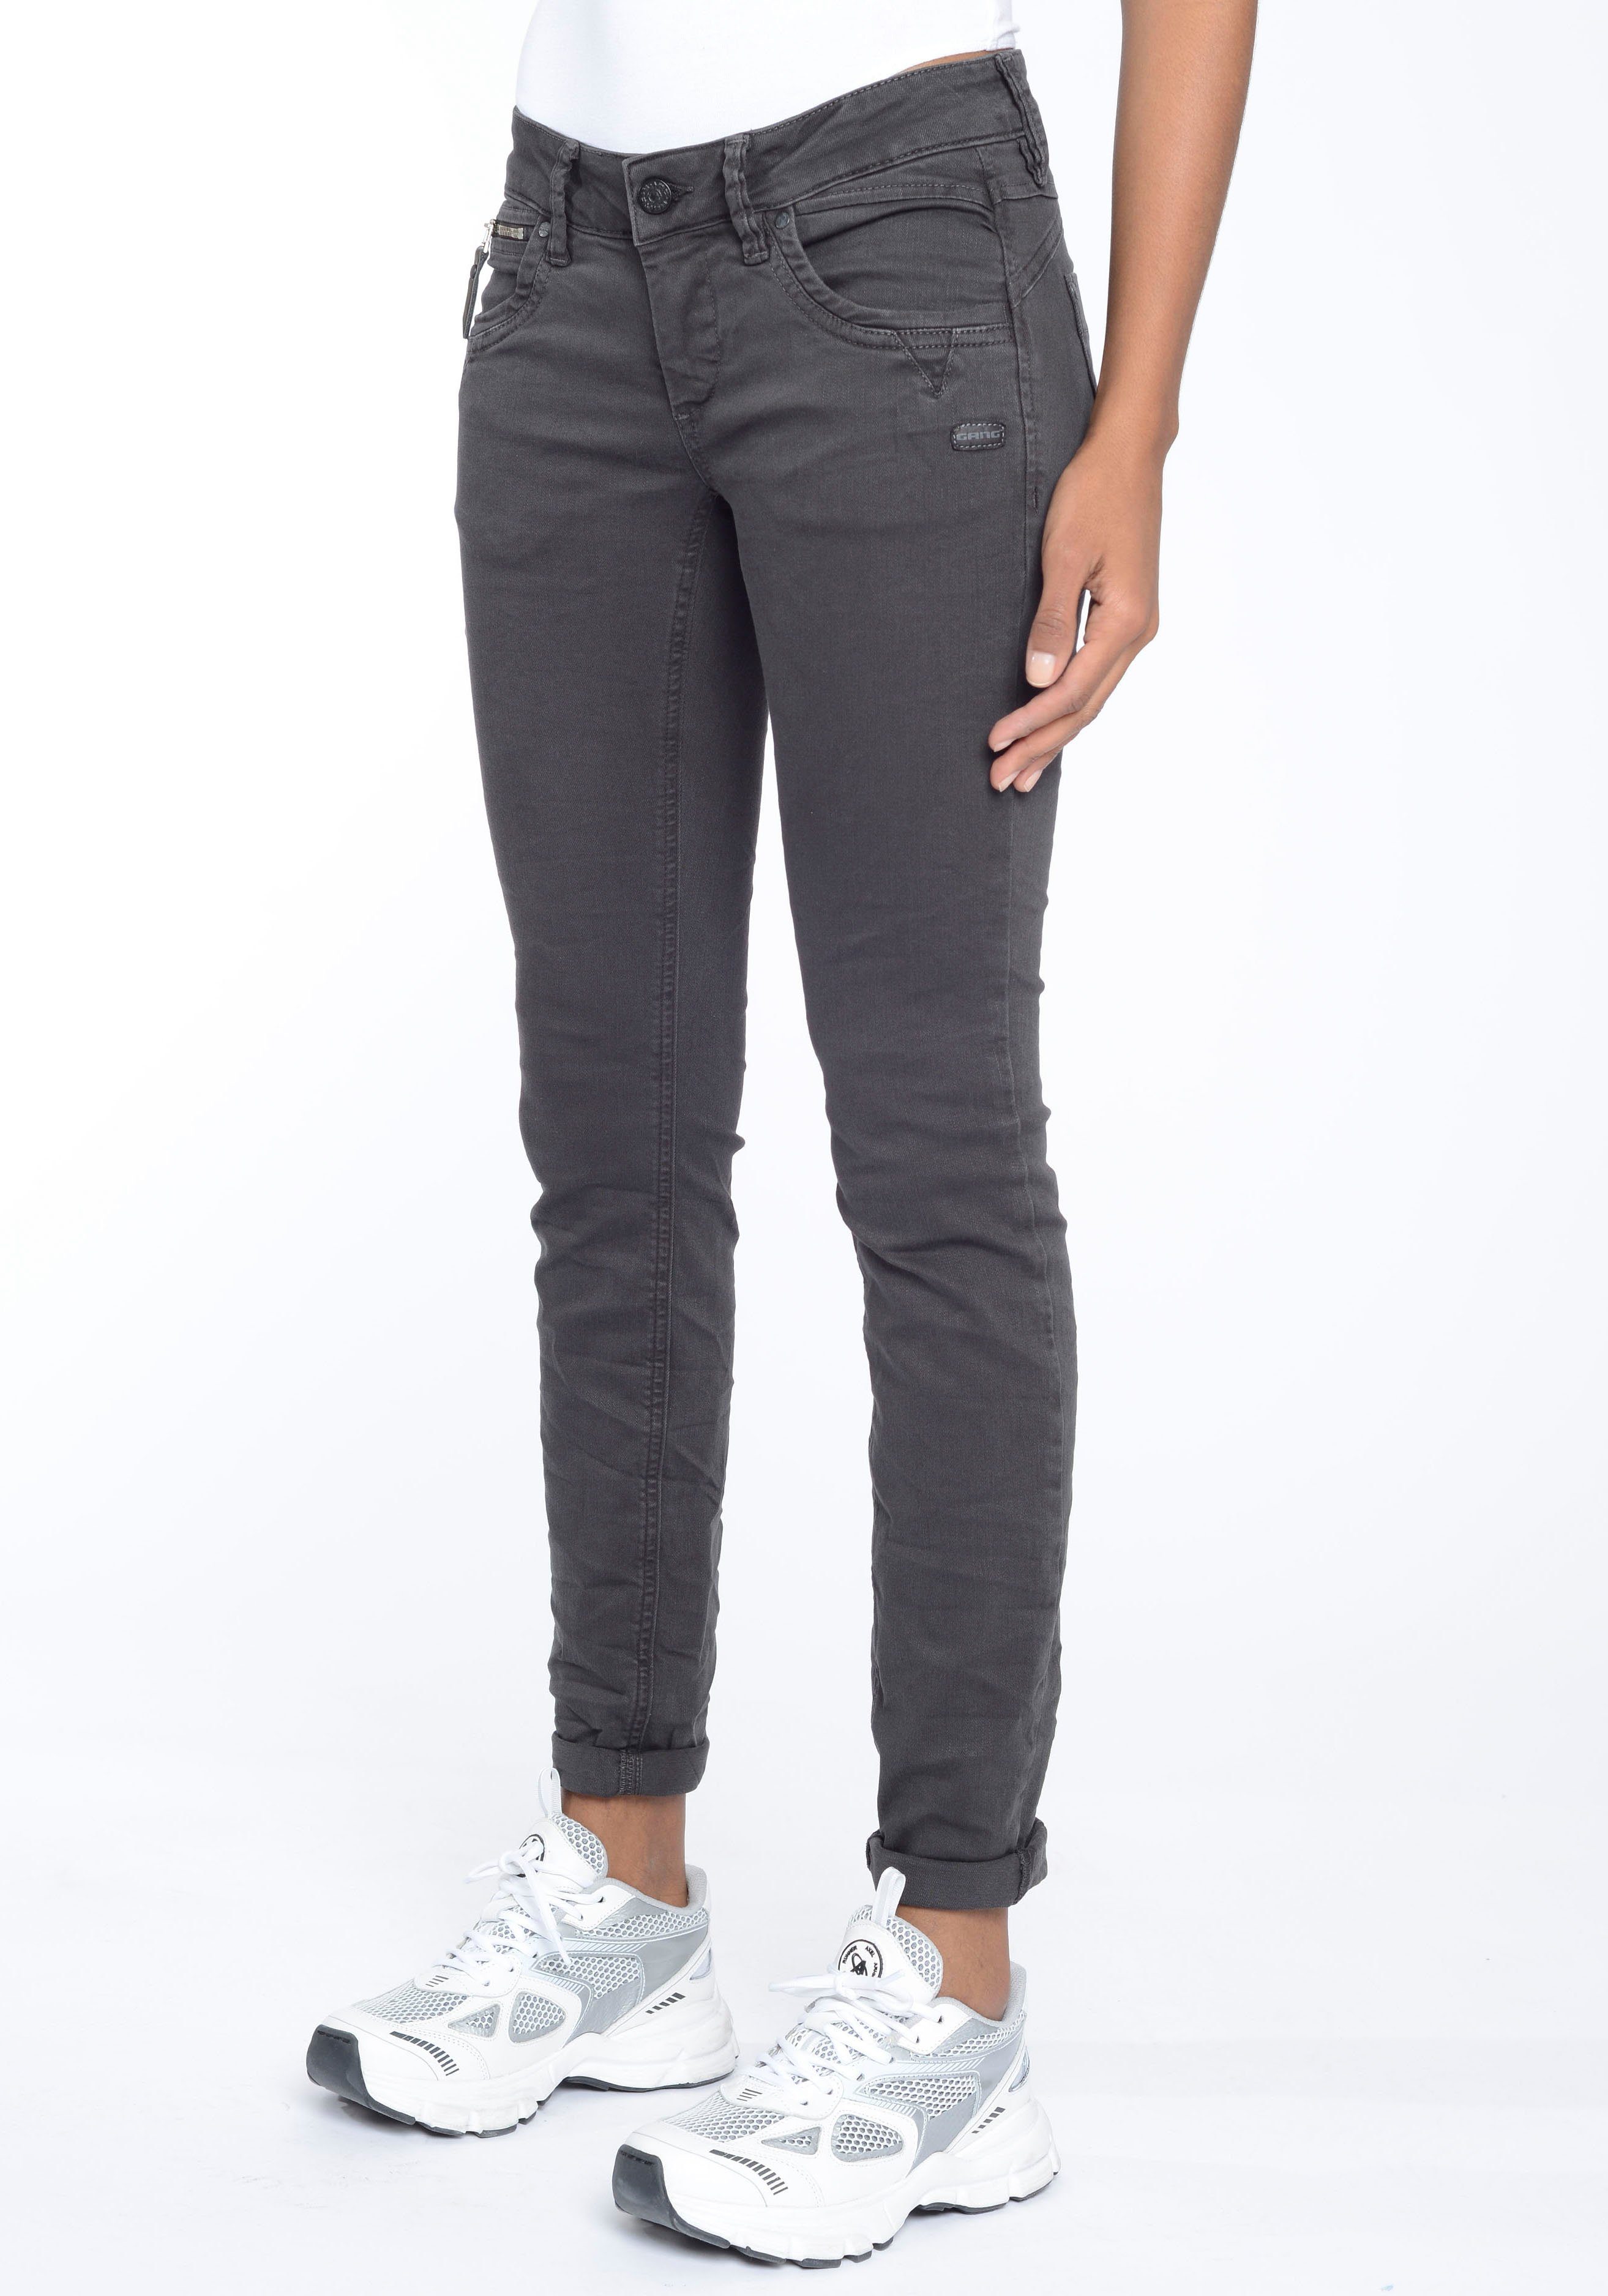 GANG durch Skinny-fit-Jeans Passform perfekte raven Stretch-Denim 94NIKITA